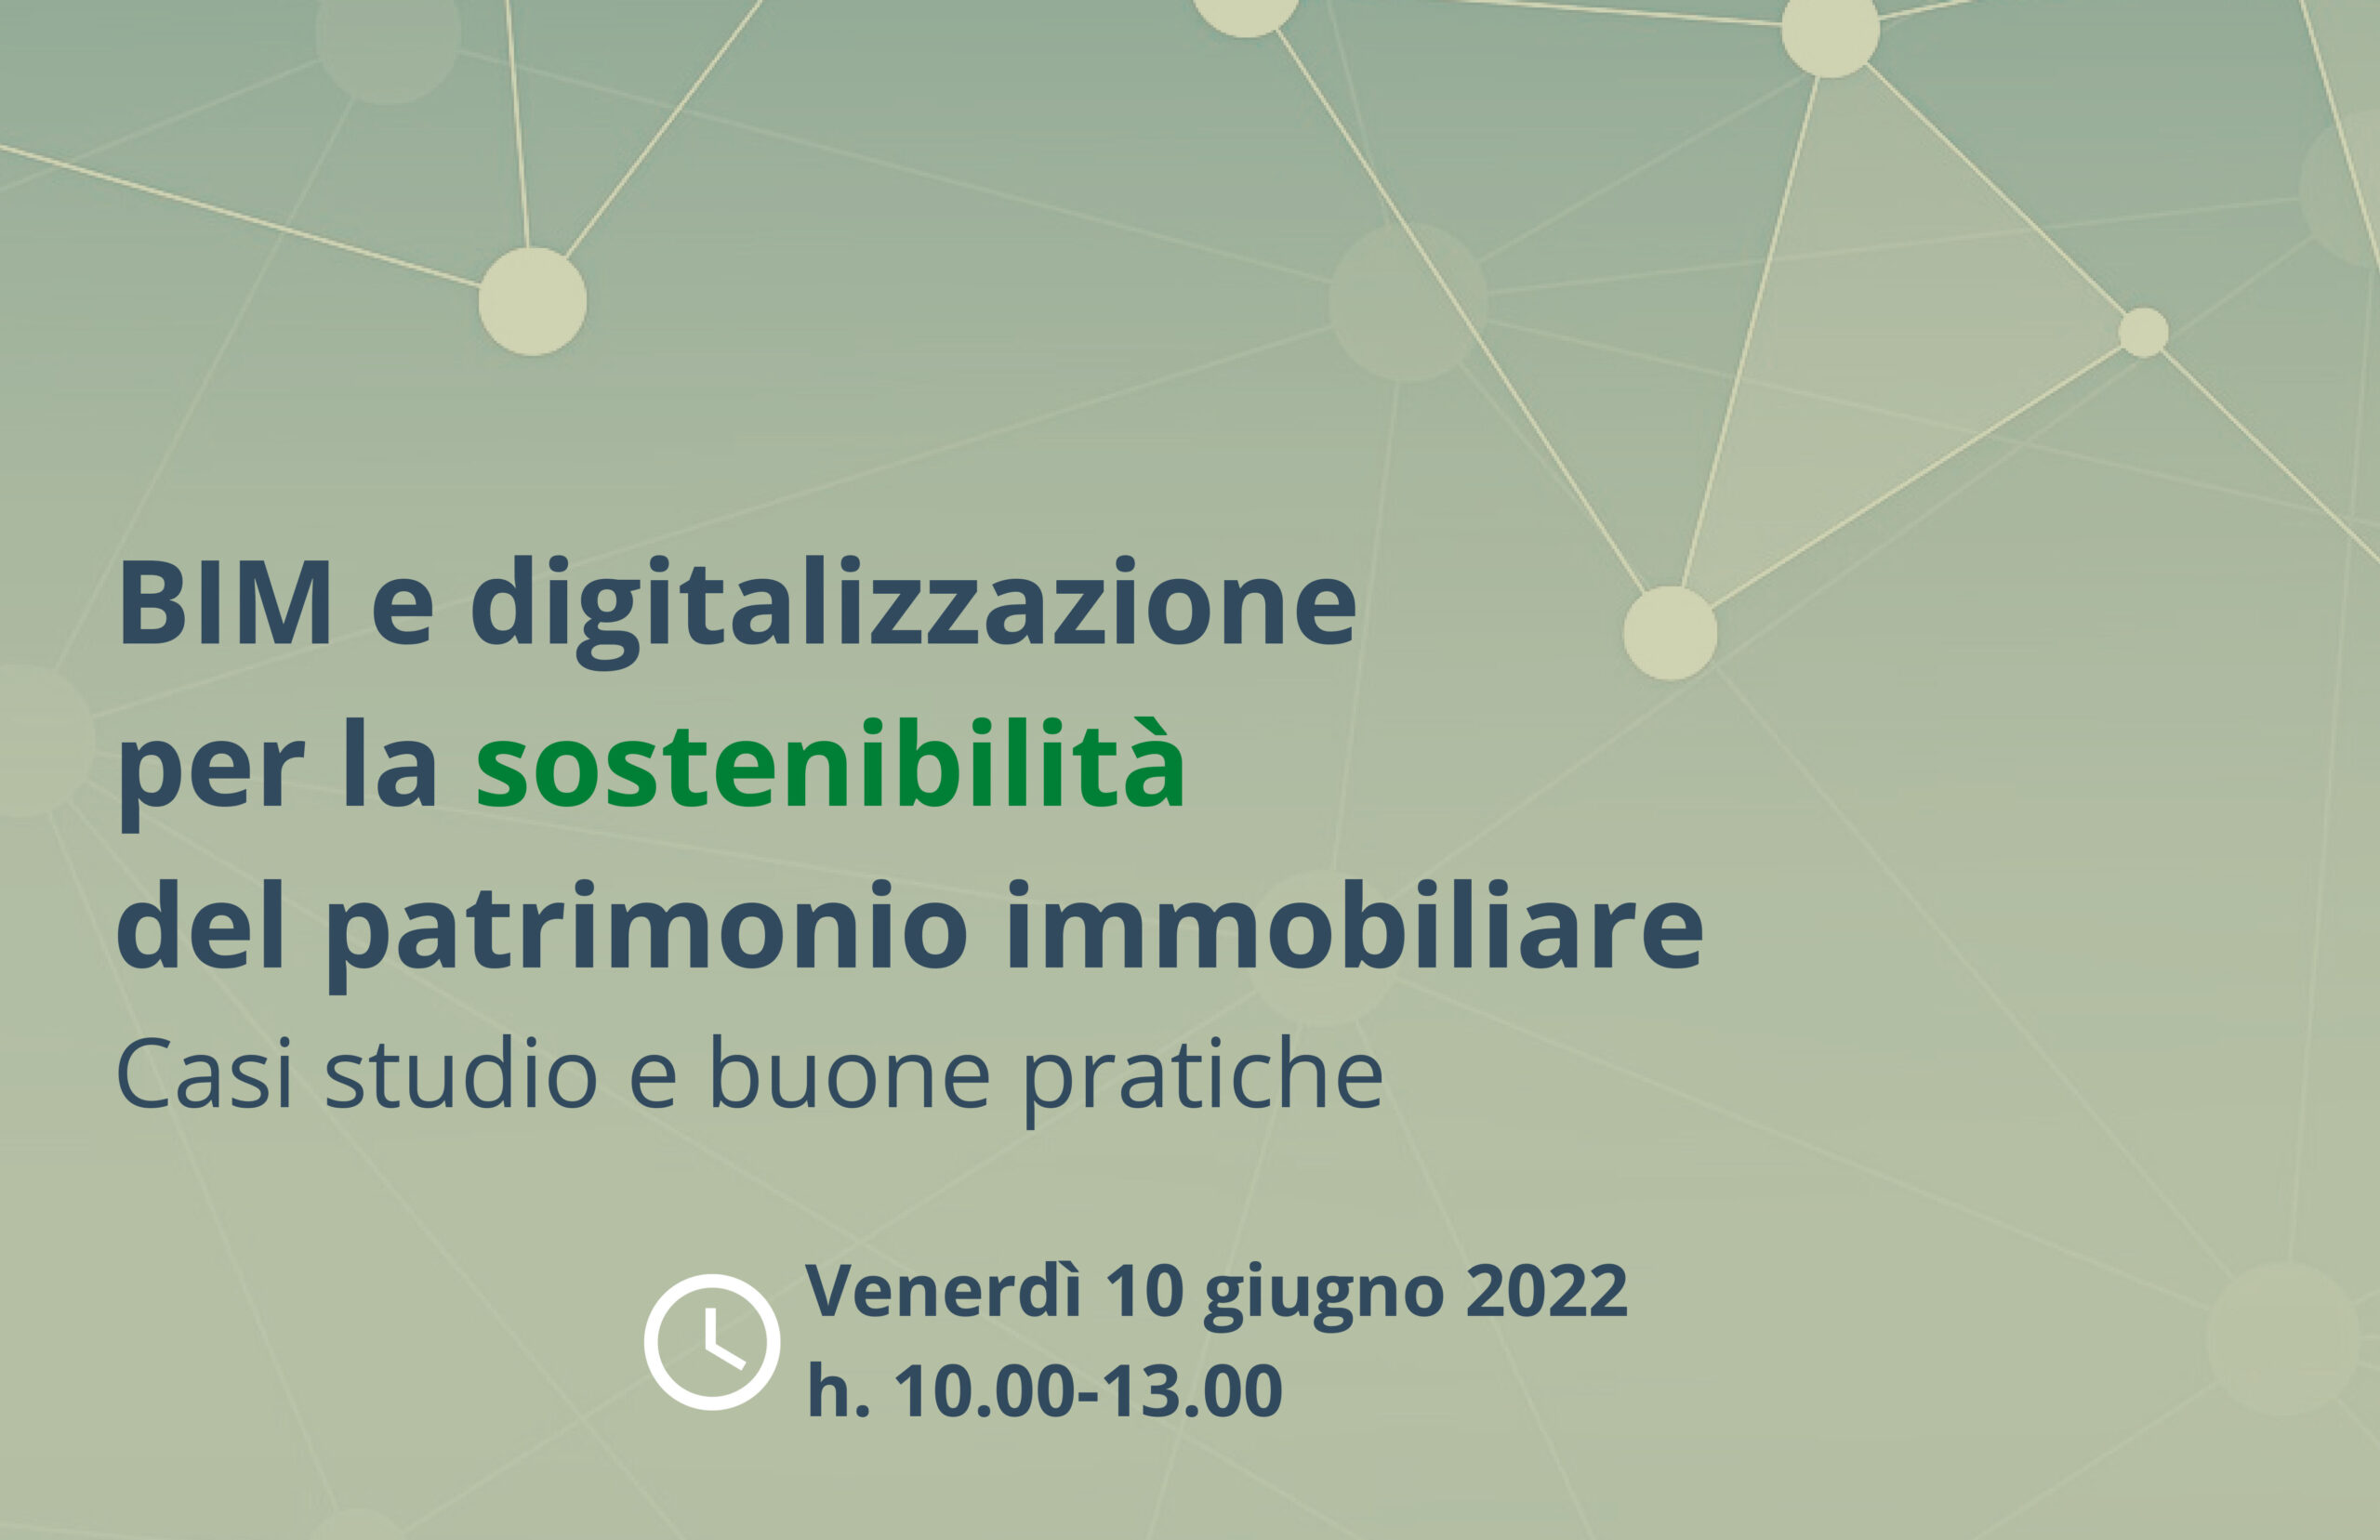 BIM e digitalizzazione per la sostenibilità del patrimonio immobiliare: Con Habitech il 10 giugno a Milano